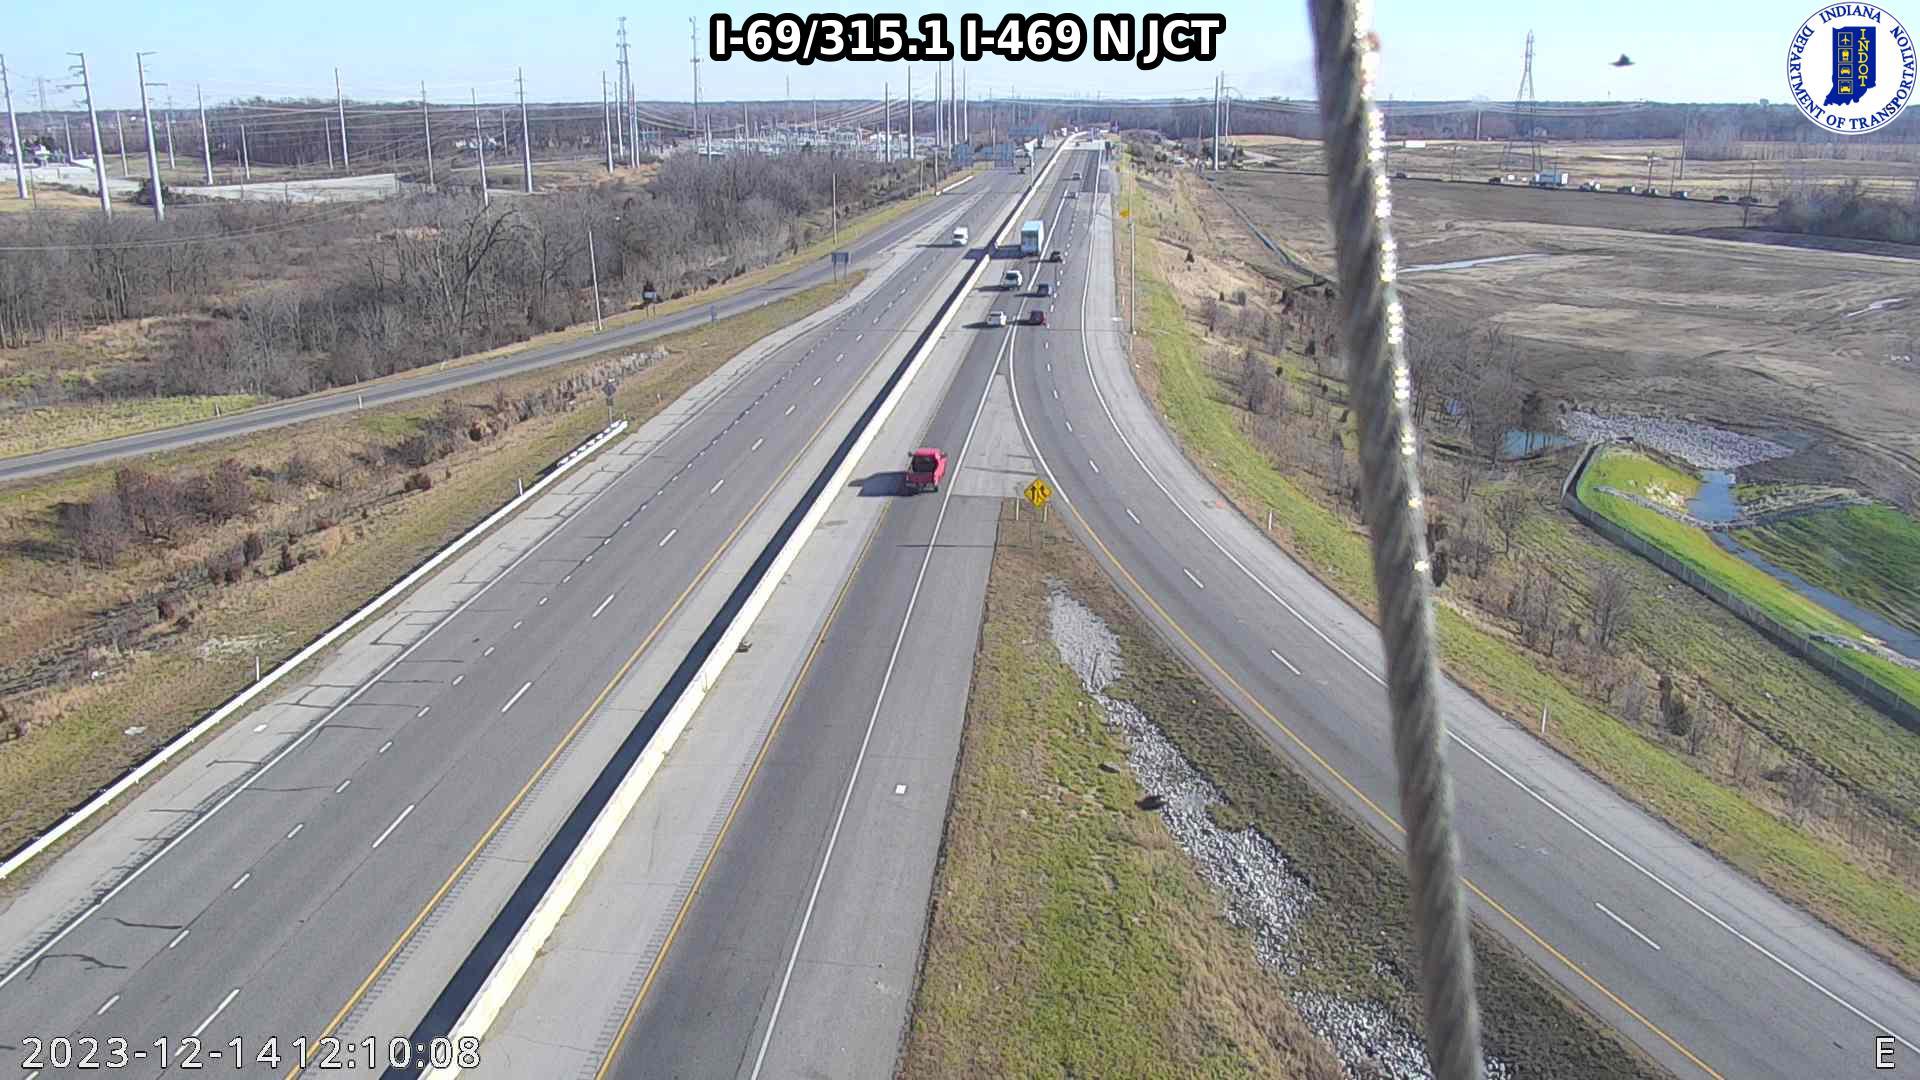 Fort Wayne: I-69: I-69/315.1 I-469 N JCT: I-69/315.1 I-469 N JCT Traffic Camera